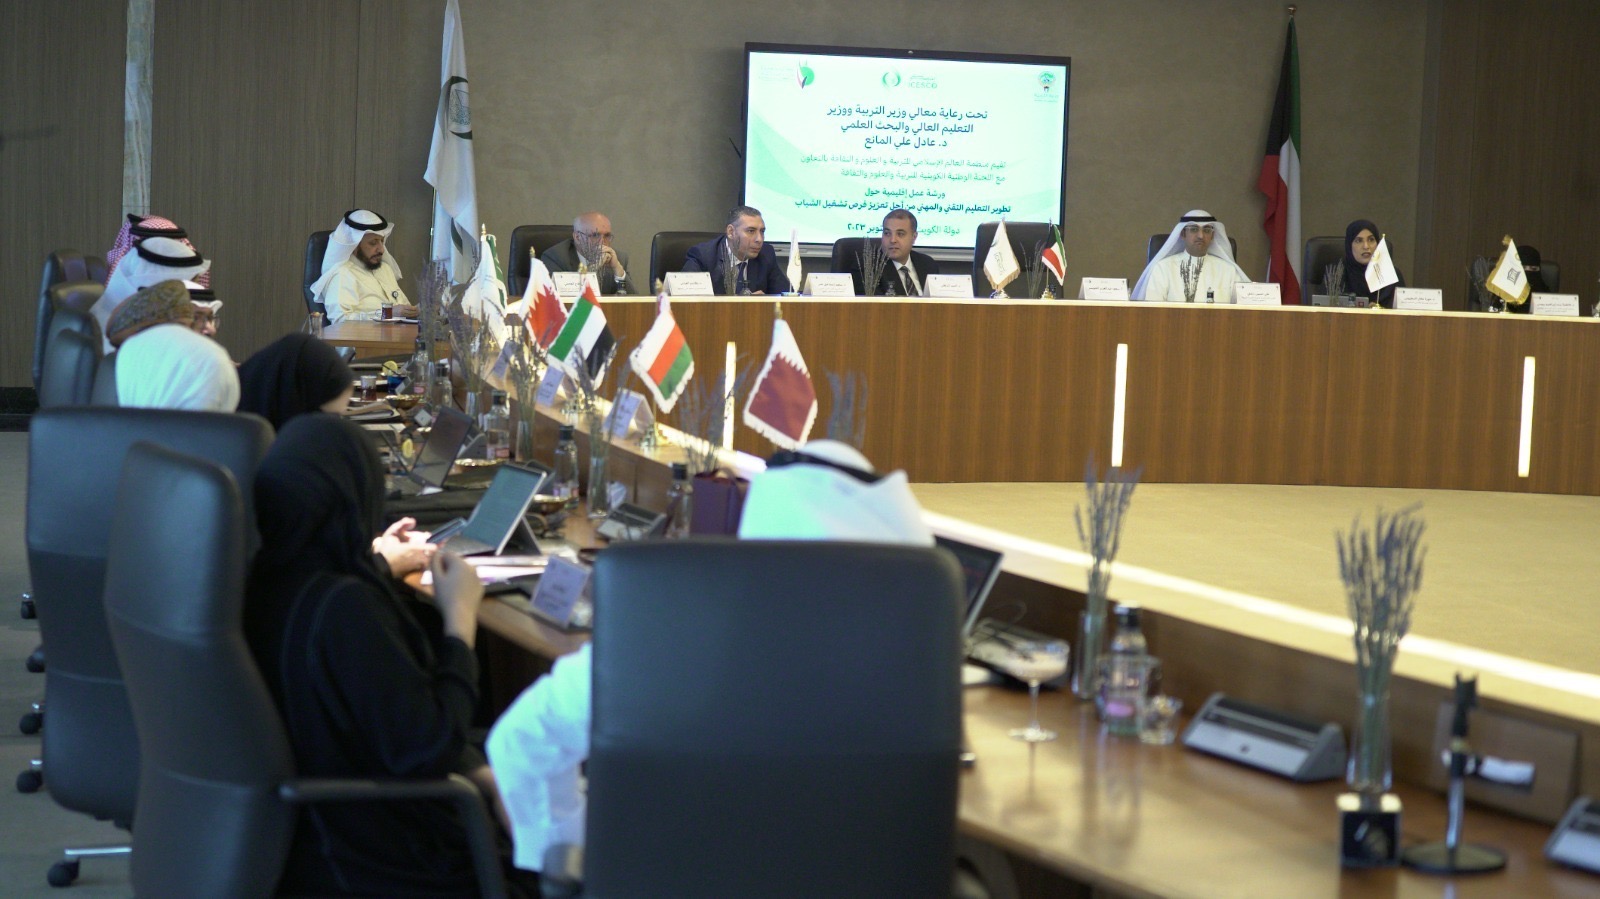 L’ICESCO tient au Koweït un atelier sur le développement de l’enseignement technique pour renforcer les opportunités d’emploi des jeunes